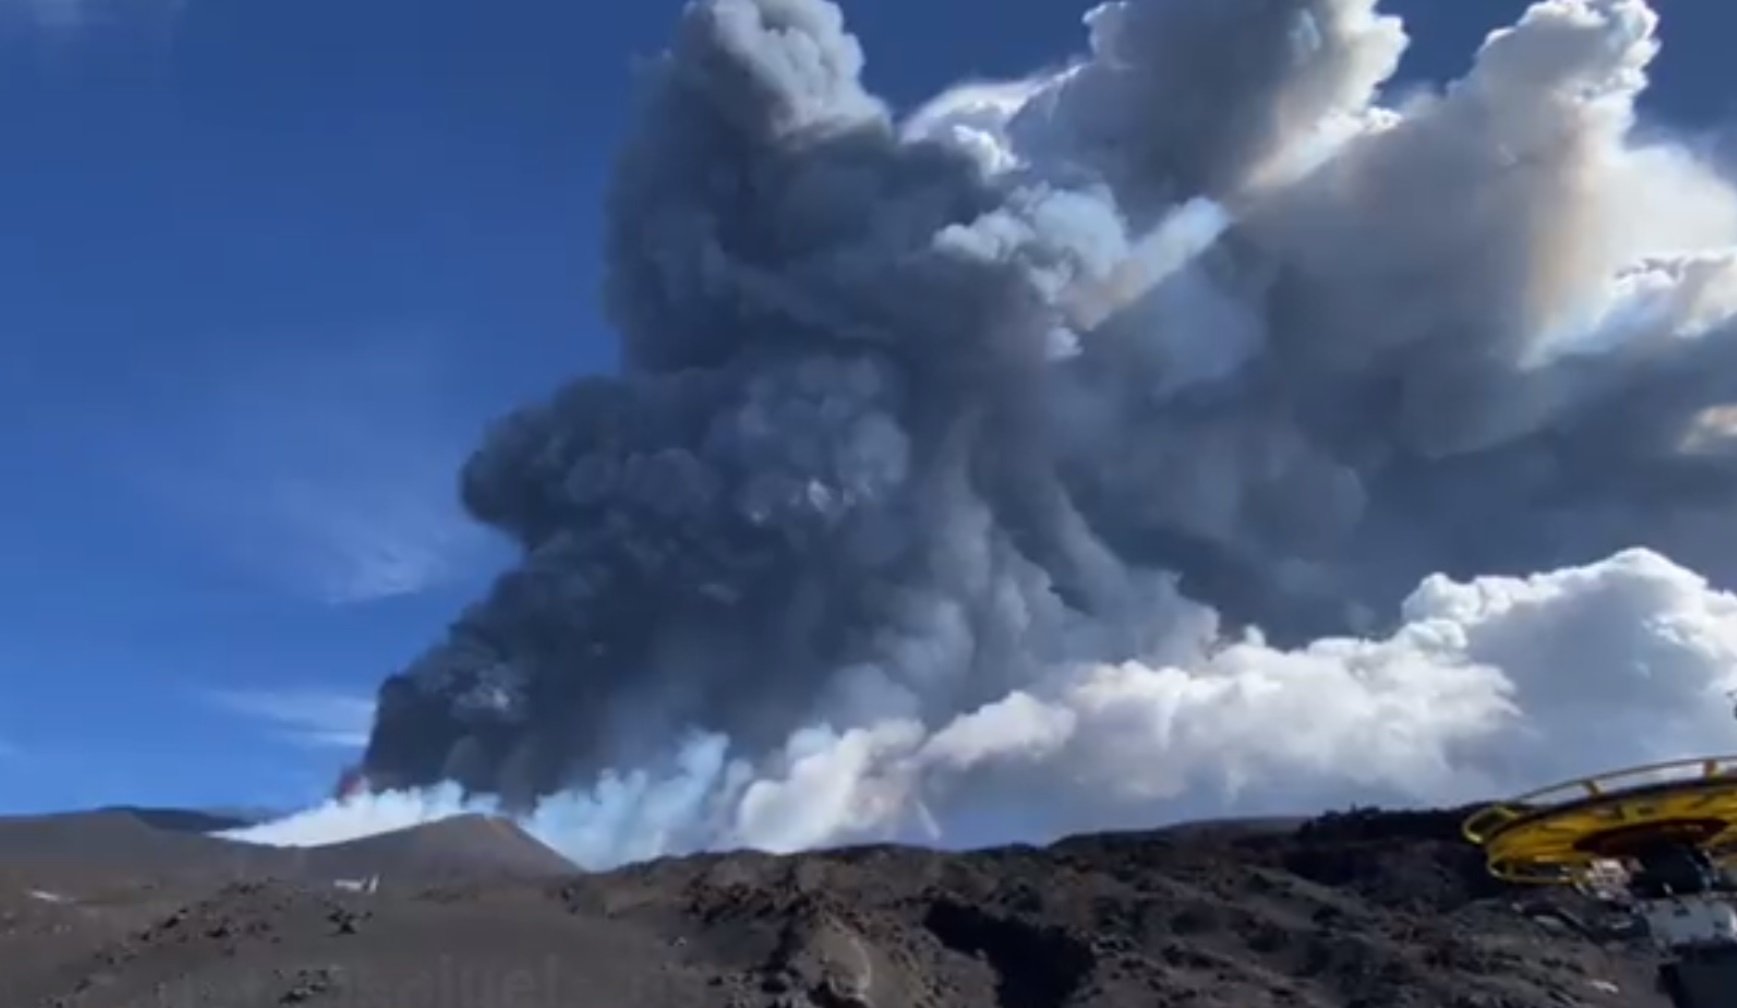 El volcán Etna entra de nuevo en erupción con emisión de cenizas y lava